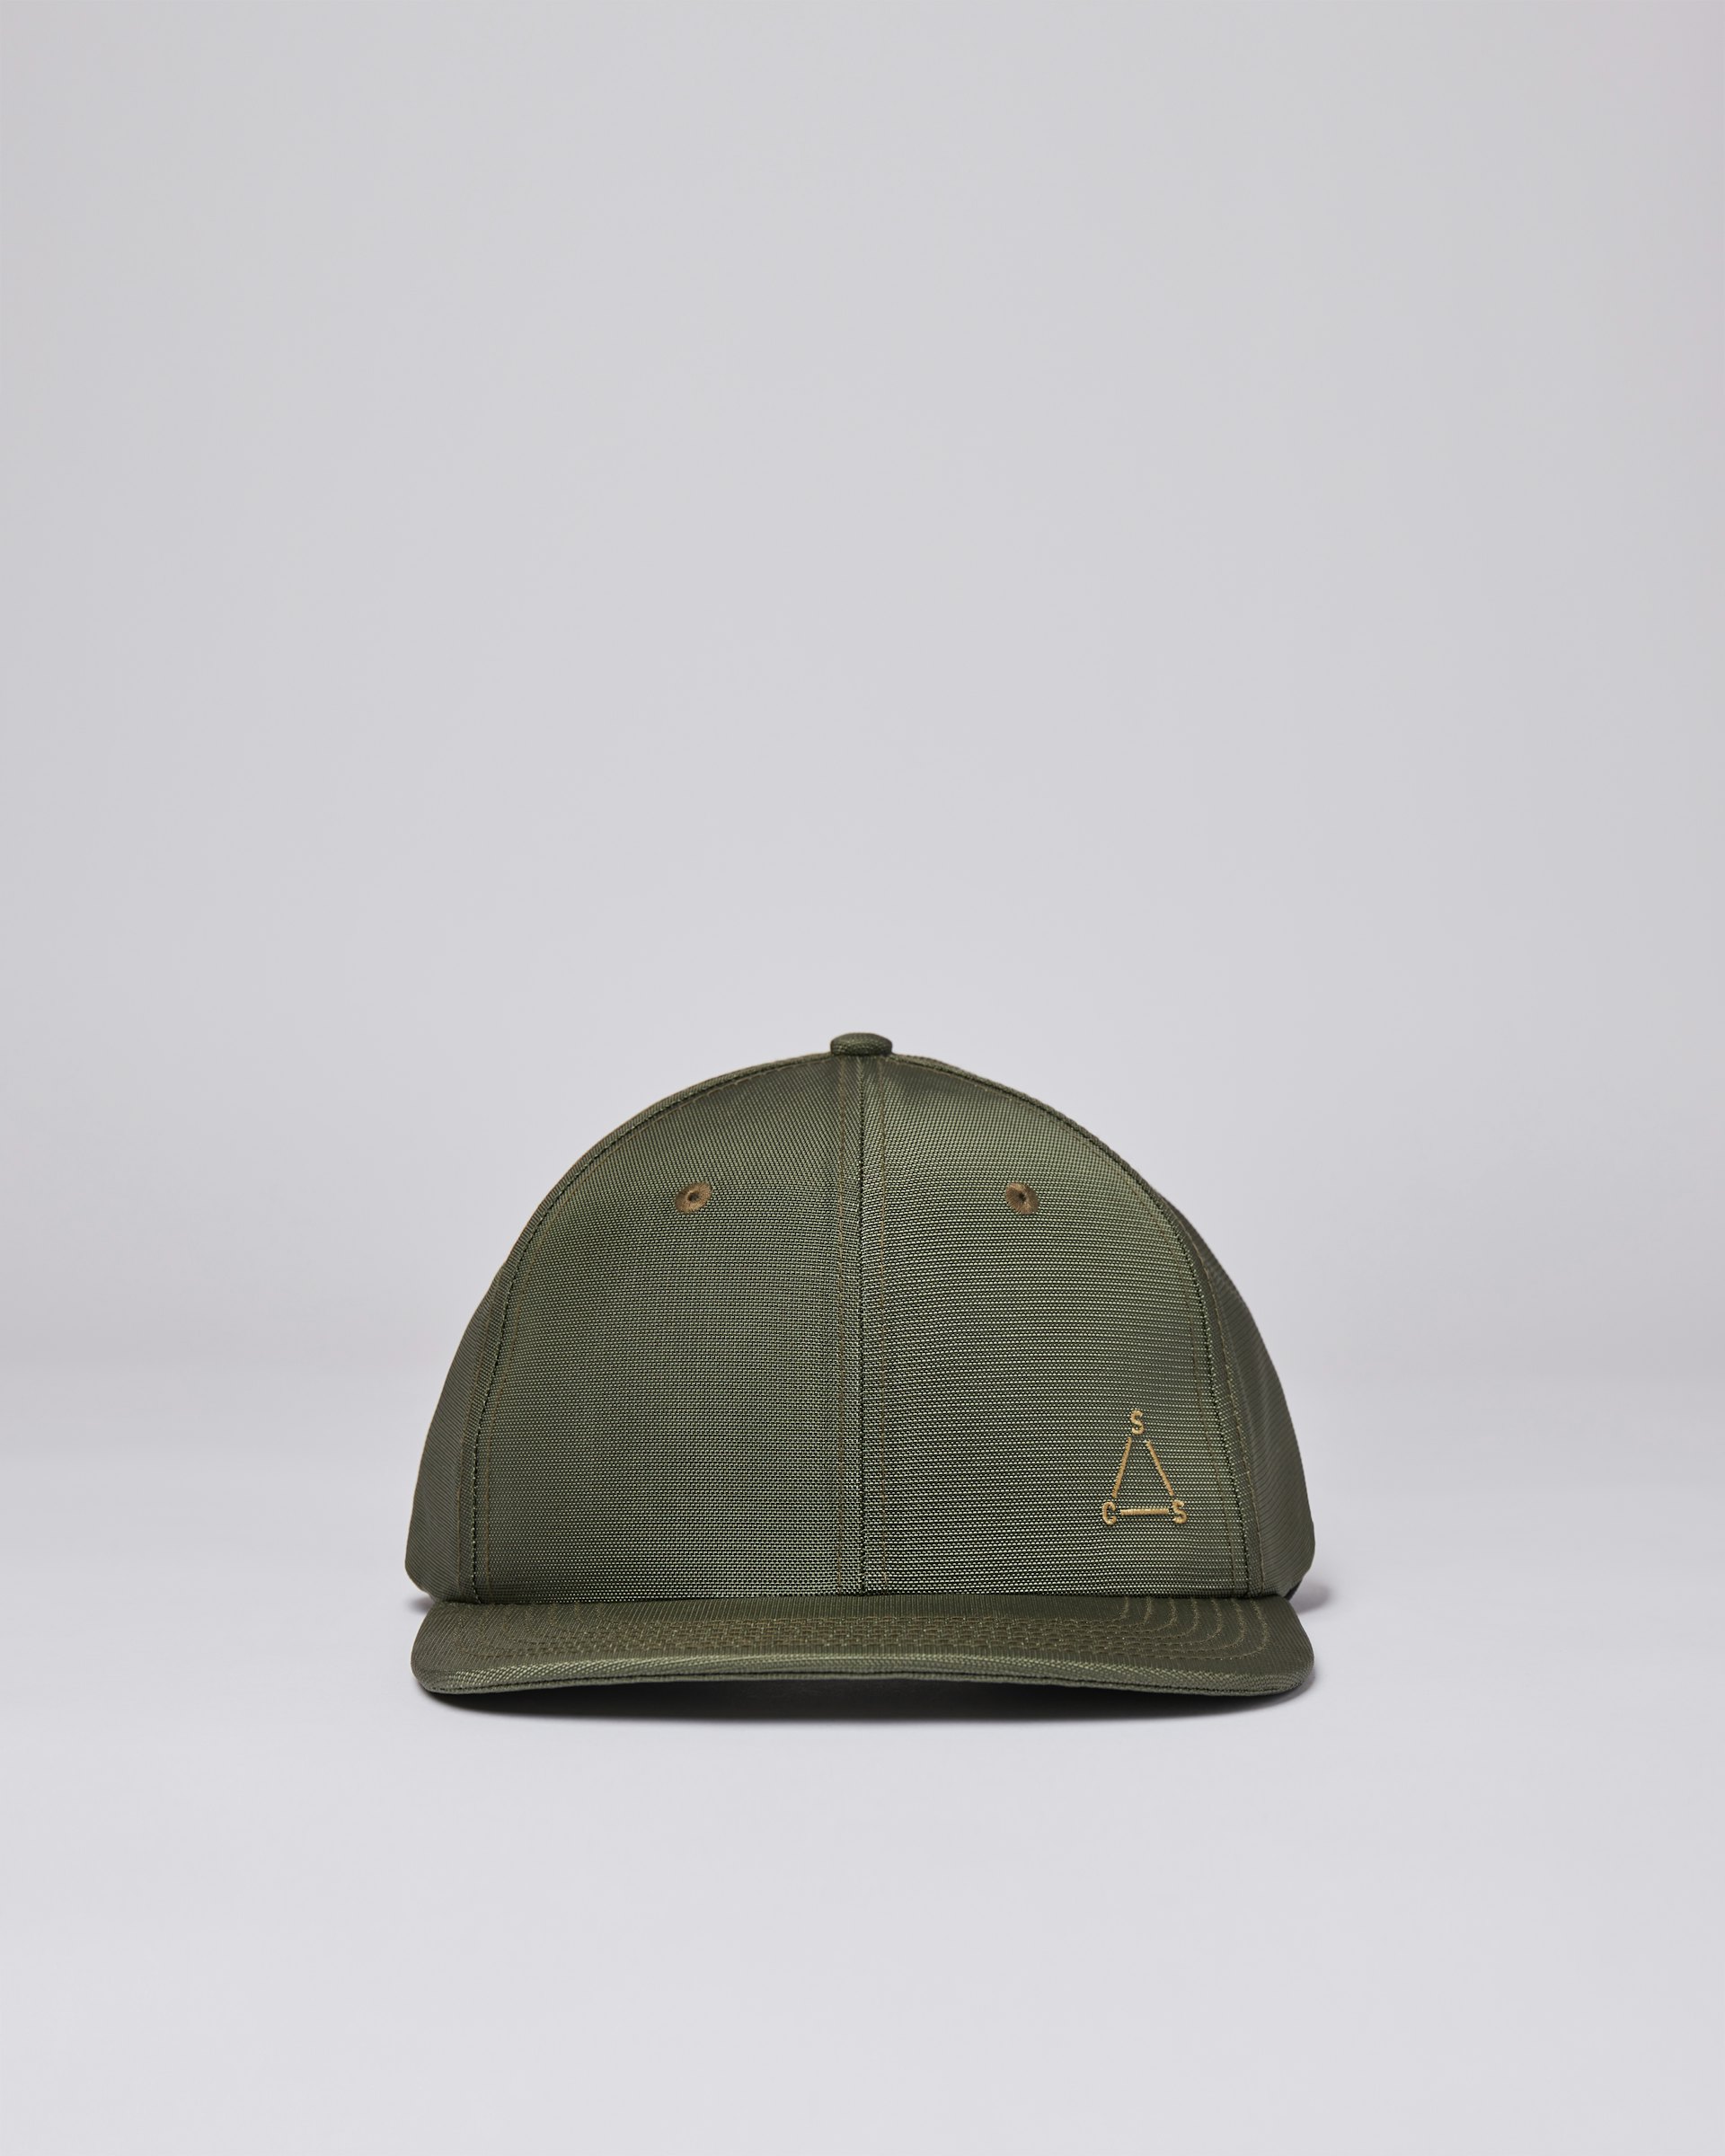 Hike Cap gehört zur kategorie Items und ist farbig green